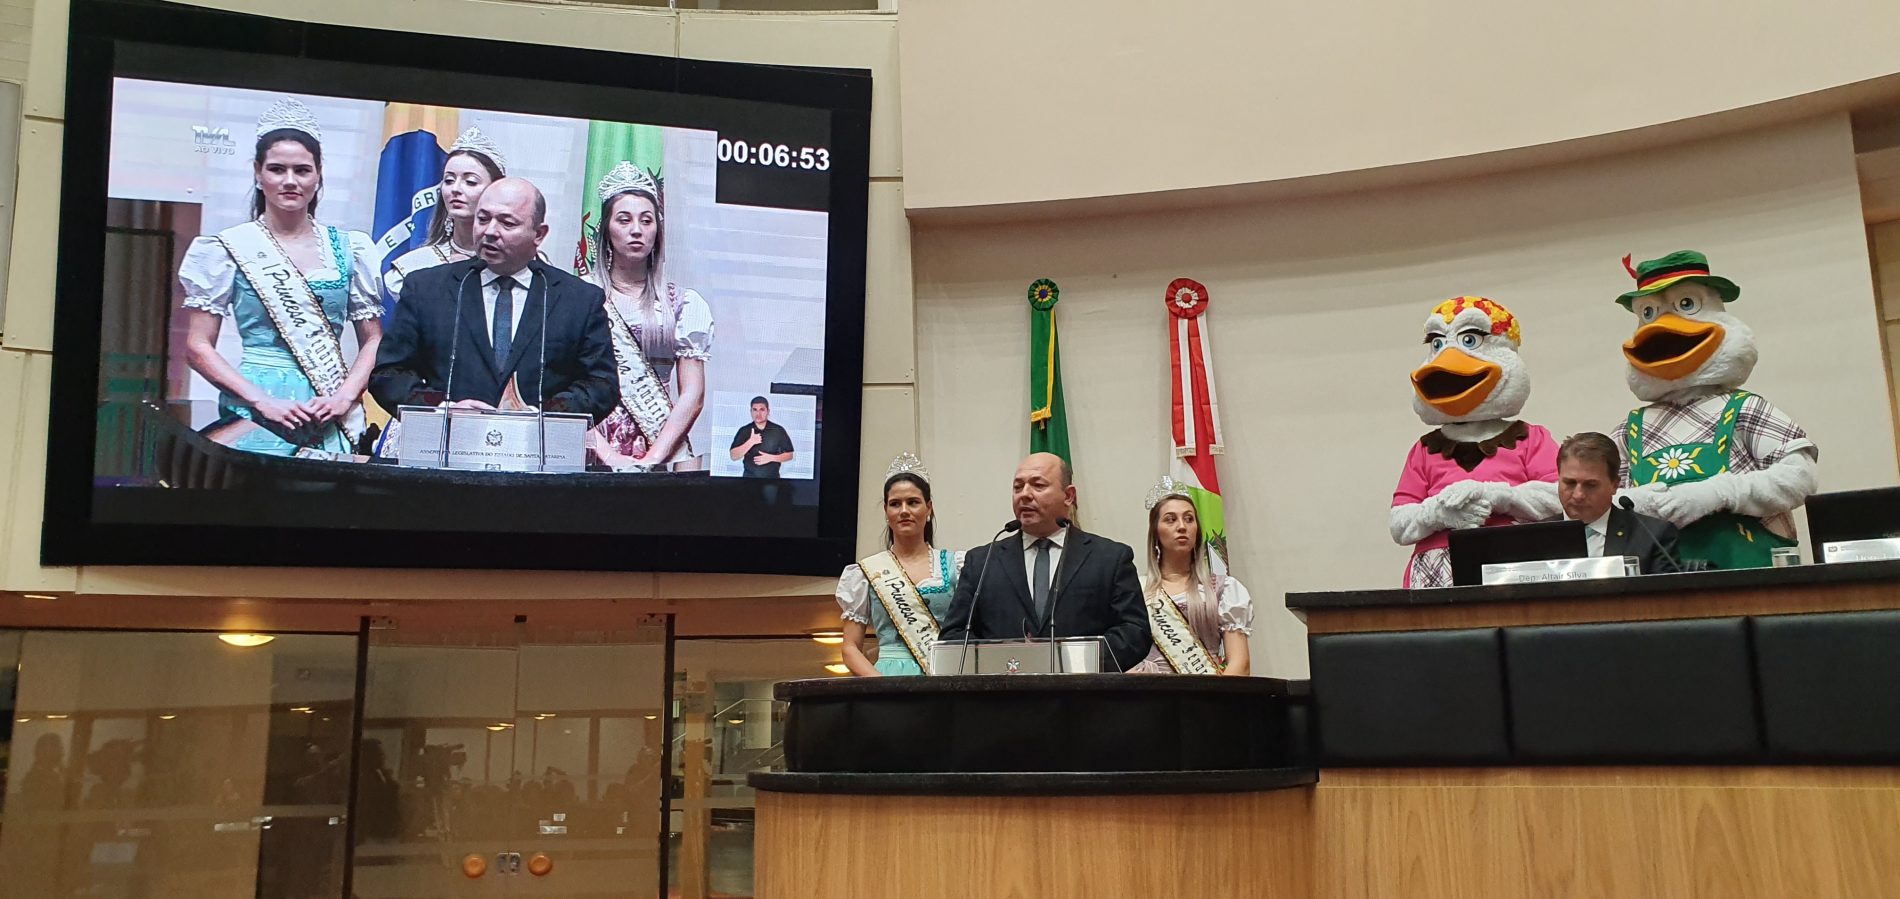 Fenarreco recebe espaço para divulgação durante sessão na Assembleia Legislativa de Santa Catarina